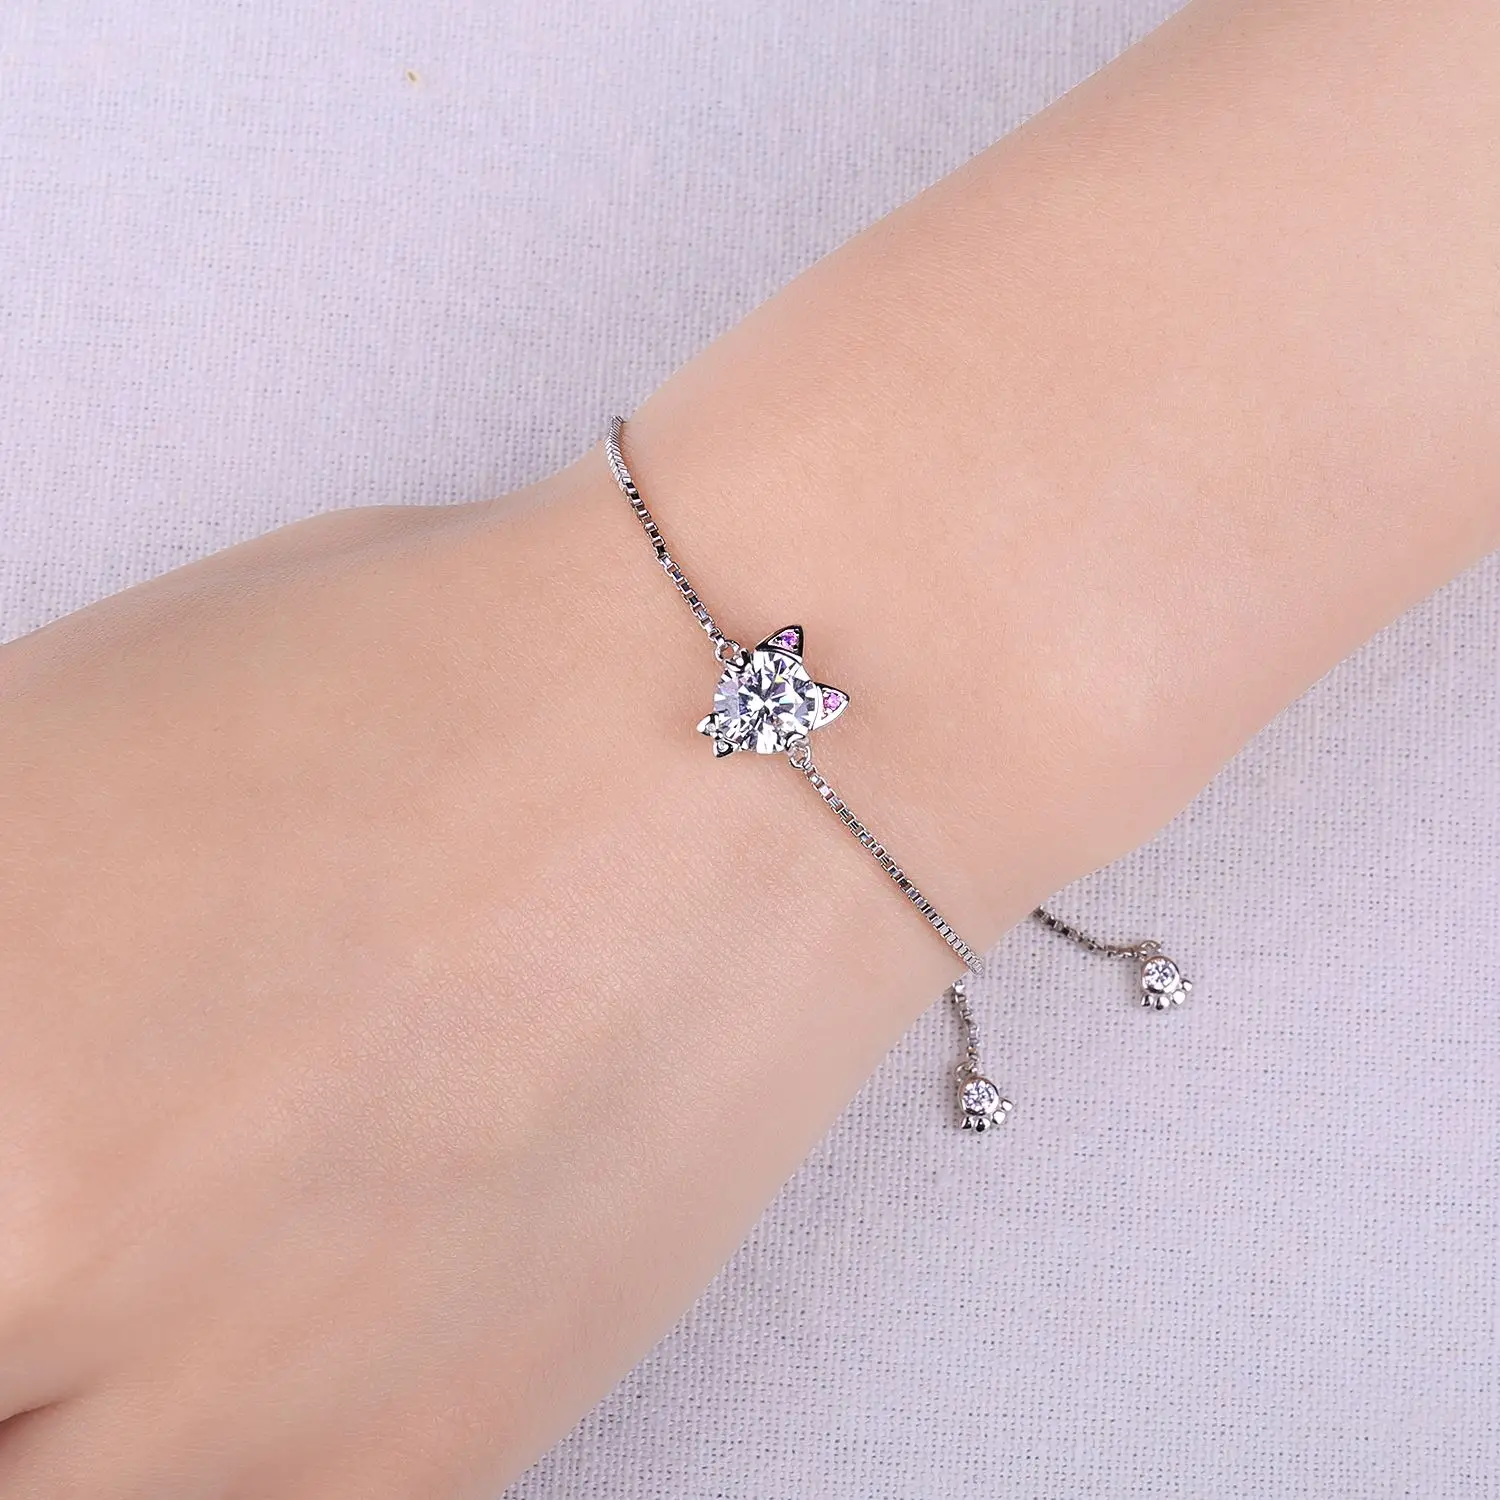 Beautiful Heart Charm Bracelet 925 Sterling Silver Women Girls Jewelry Gift  UK | eBay